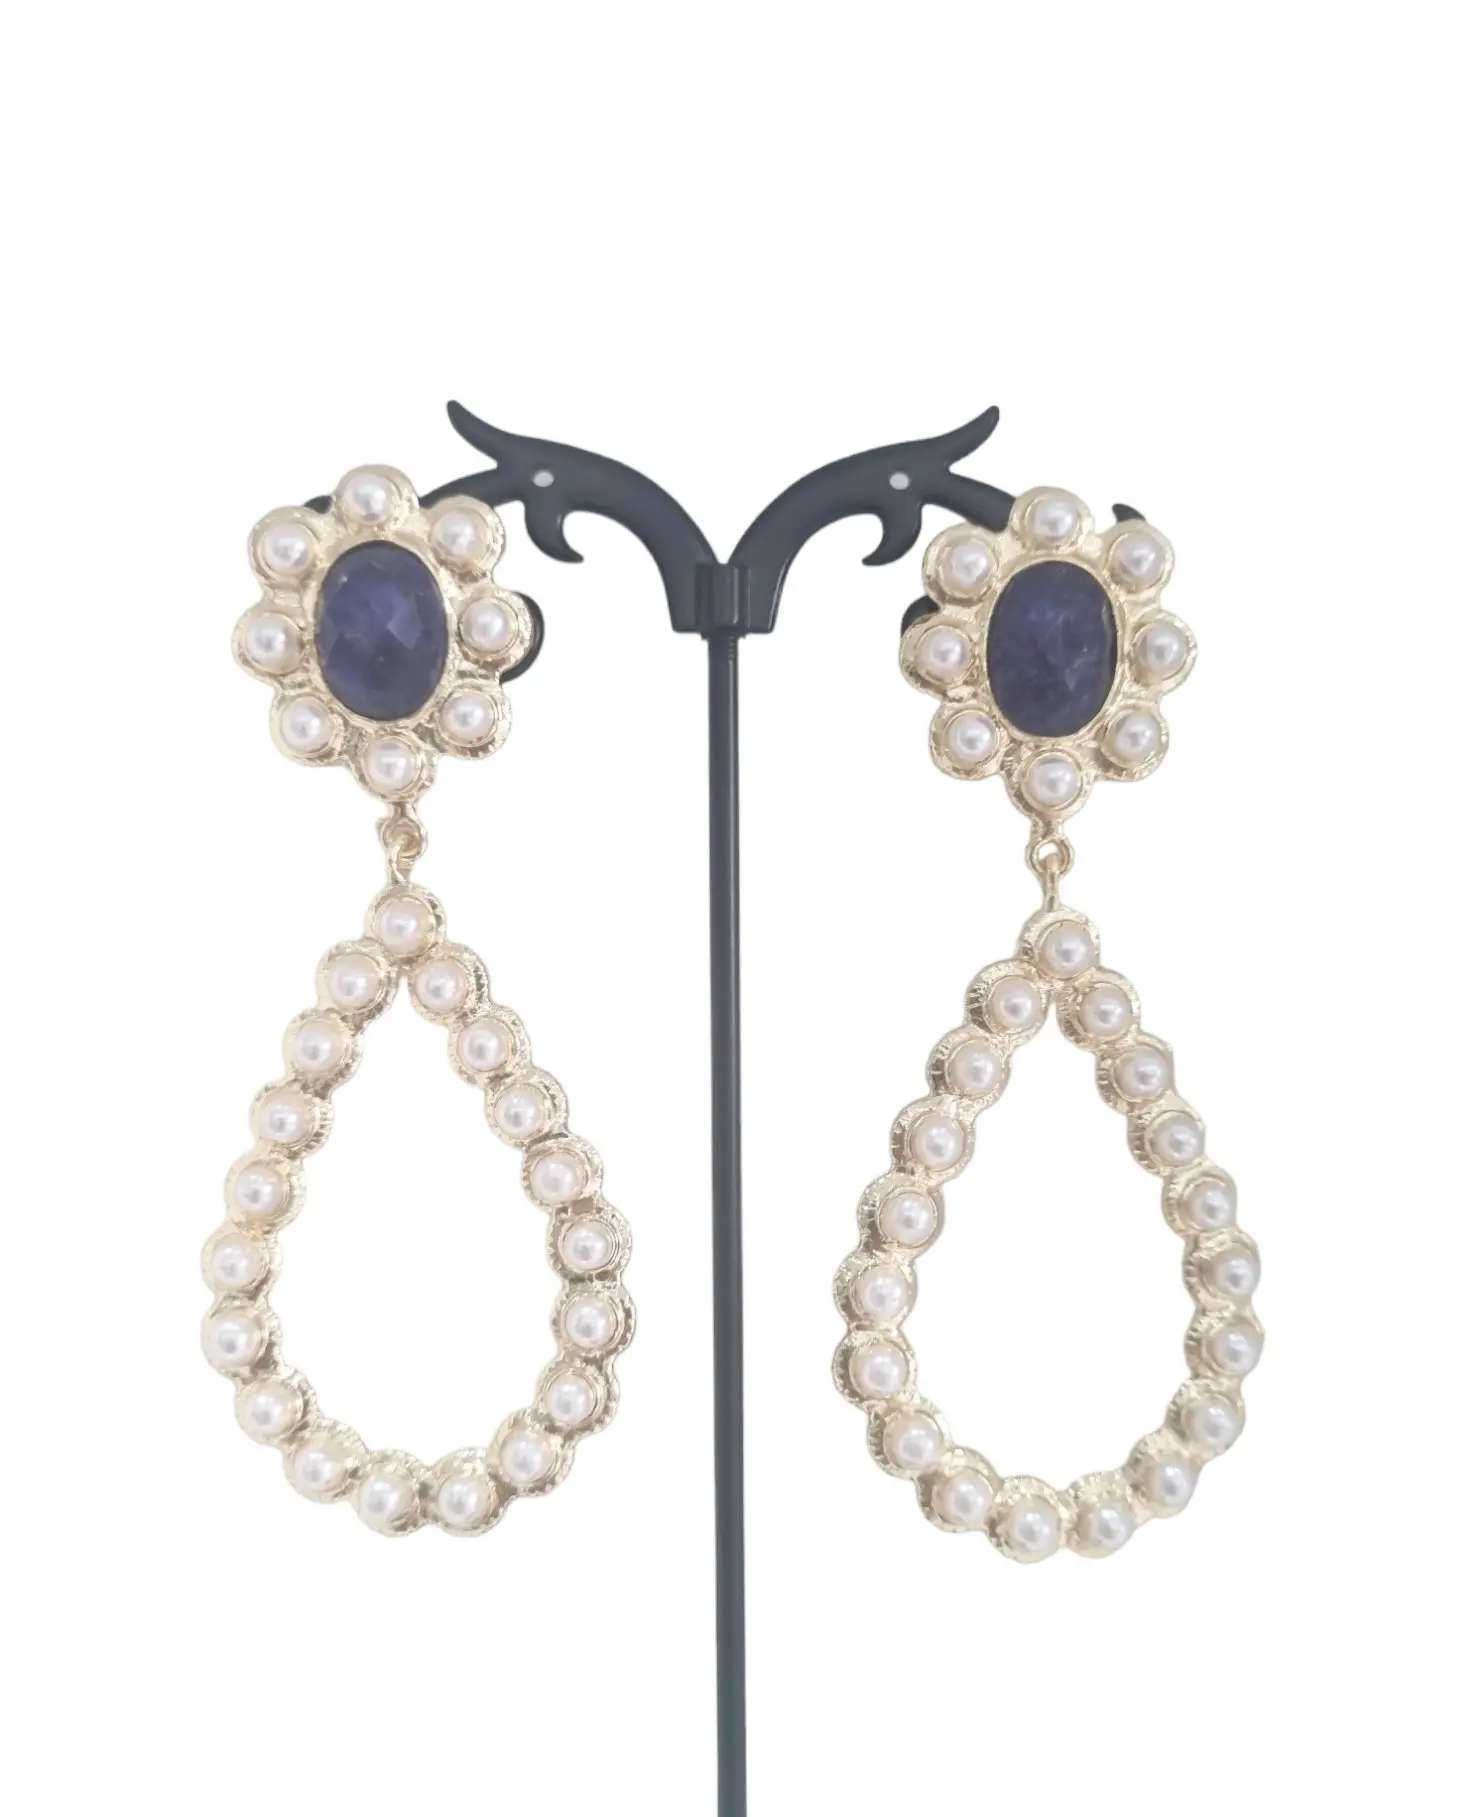 Orecchini realizzati con perle di fiume e lapislazzuli incastonati nell ottone.Lunghezza 8cmPeso  16gr